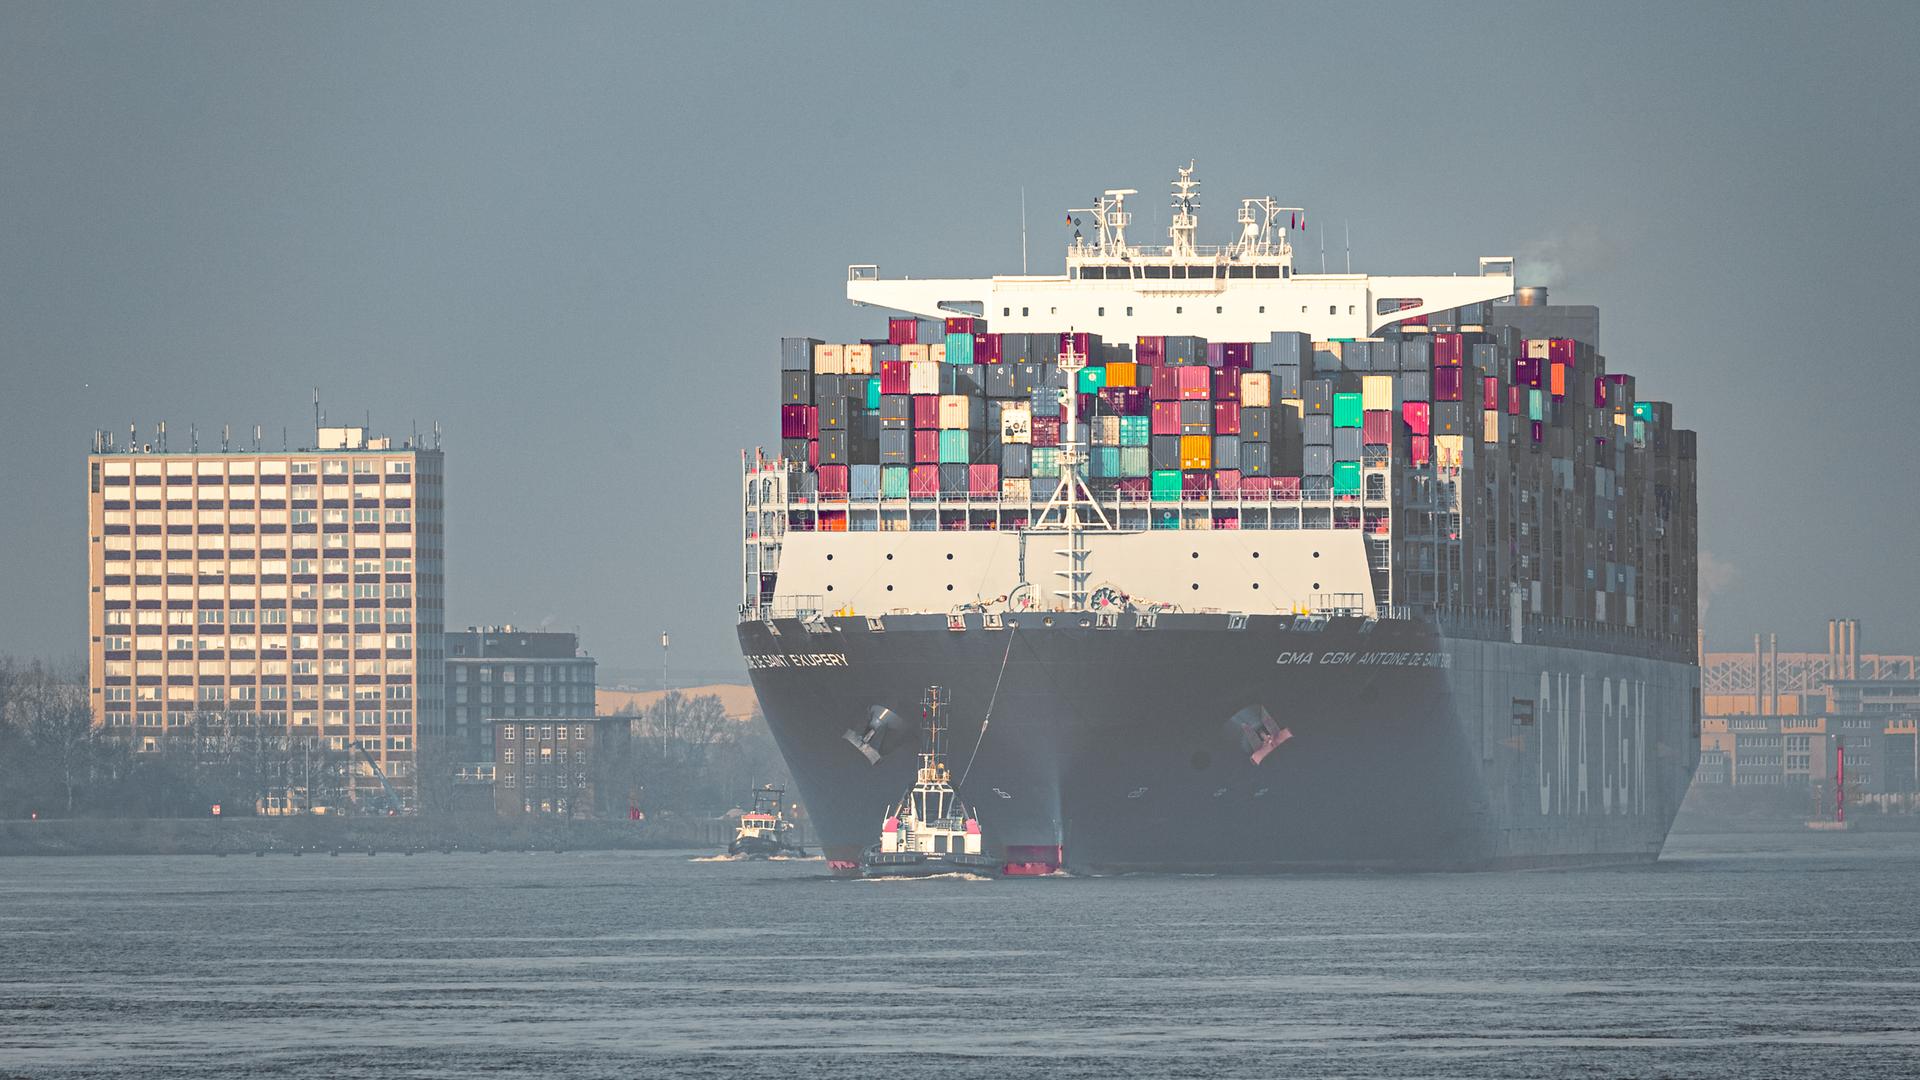 Das Conatinerschiff CMA CGM Antoine de Saint Exupery der französischen Reederei CMA CGM läuft bei leichtem Morgennebel in den Hamburger Hafen ein.